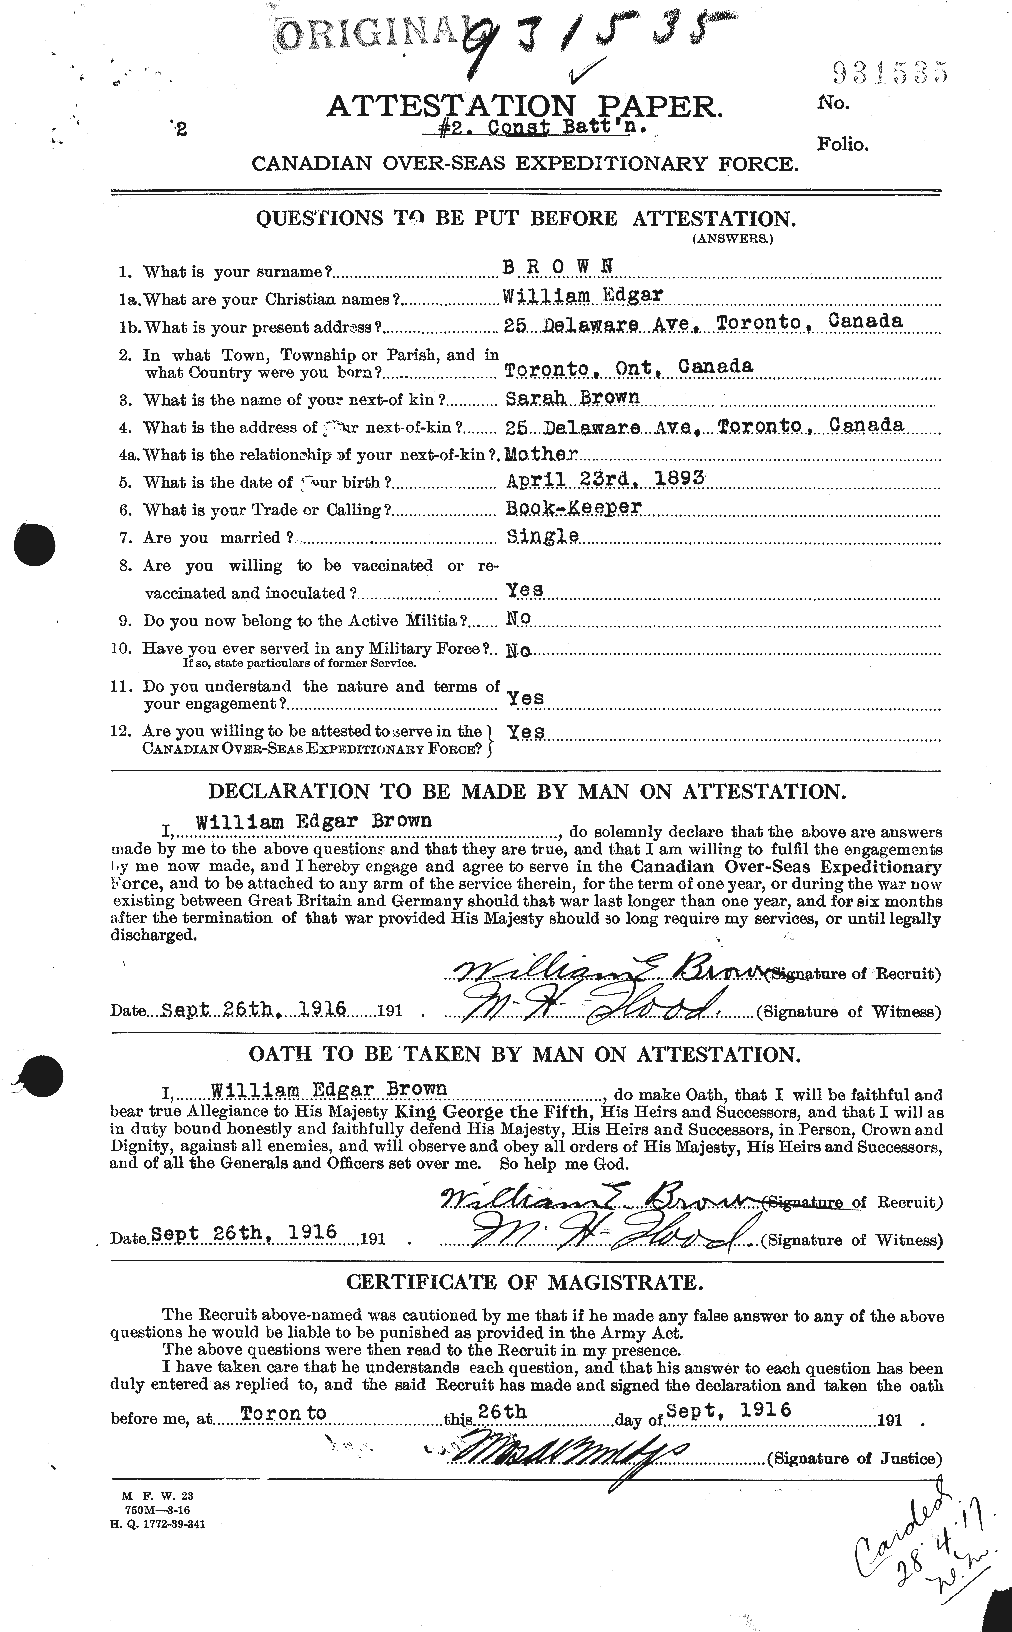 Dossiers du Personnel de la Première Guerre mondiale - CEC 268257a